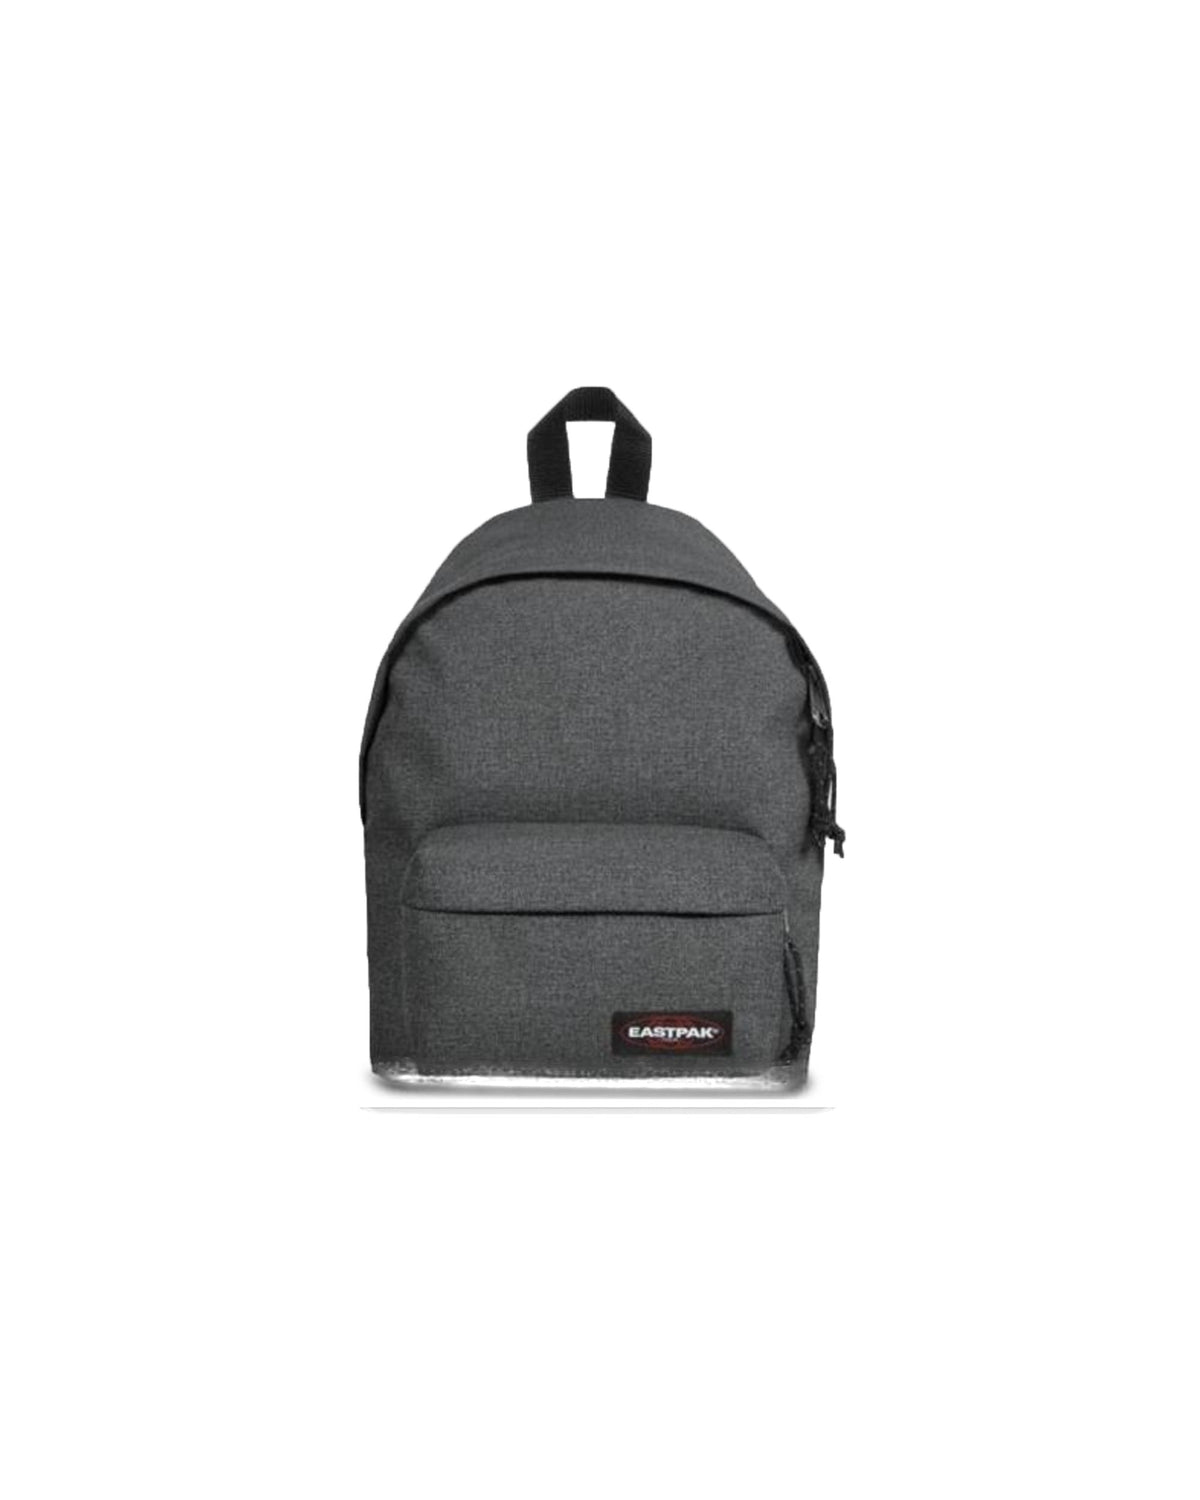 Mini Backpack Eastpak orbit black denim